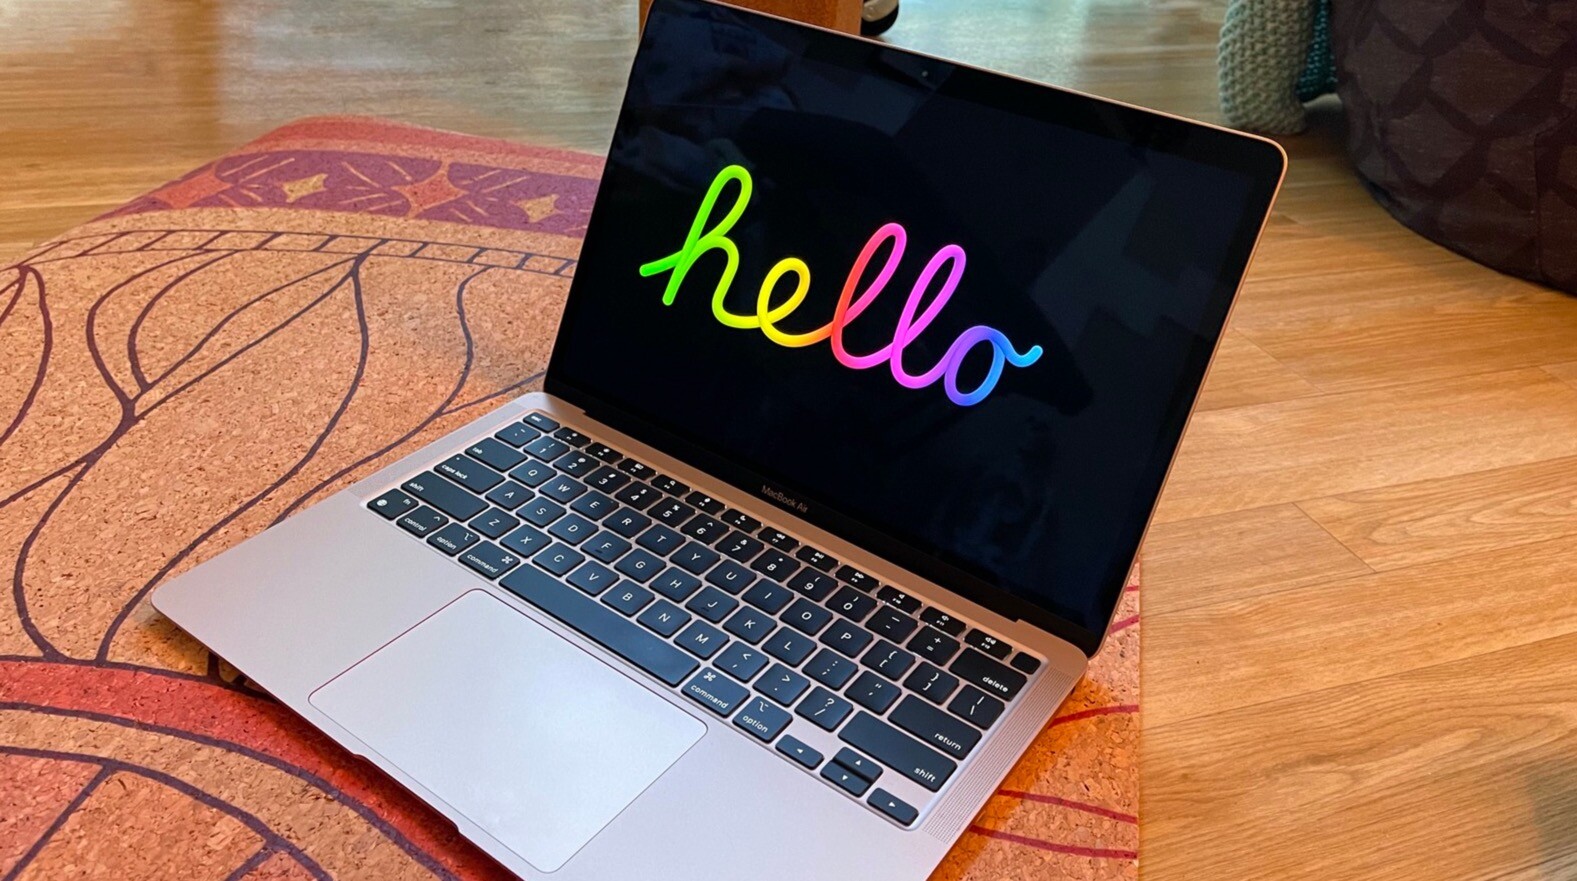 苹果在macOS Big Sur 11.3中添加了新的屏幕保护程序——“Hello”